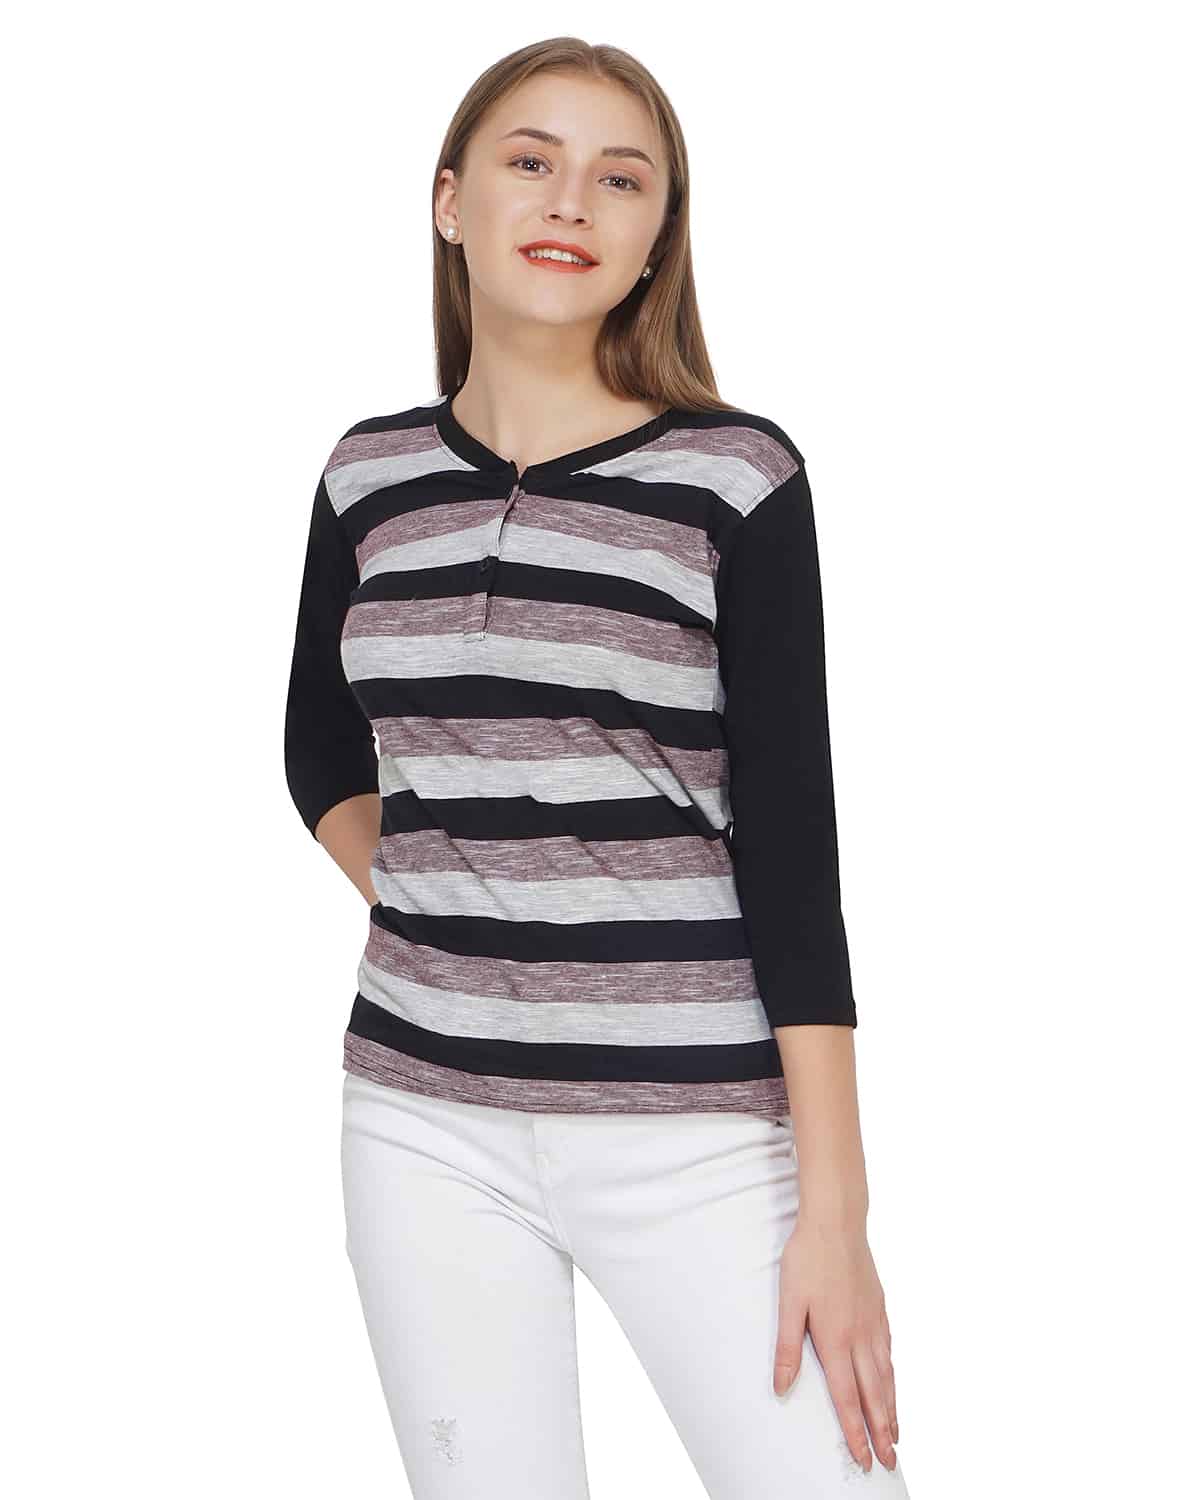 Black Stripe T-Shirt women multi full sleeves